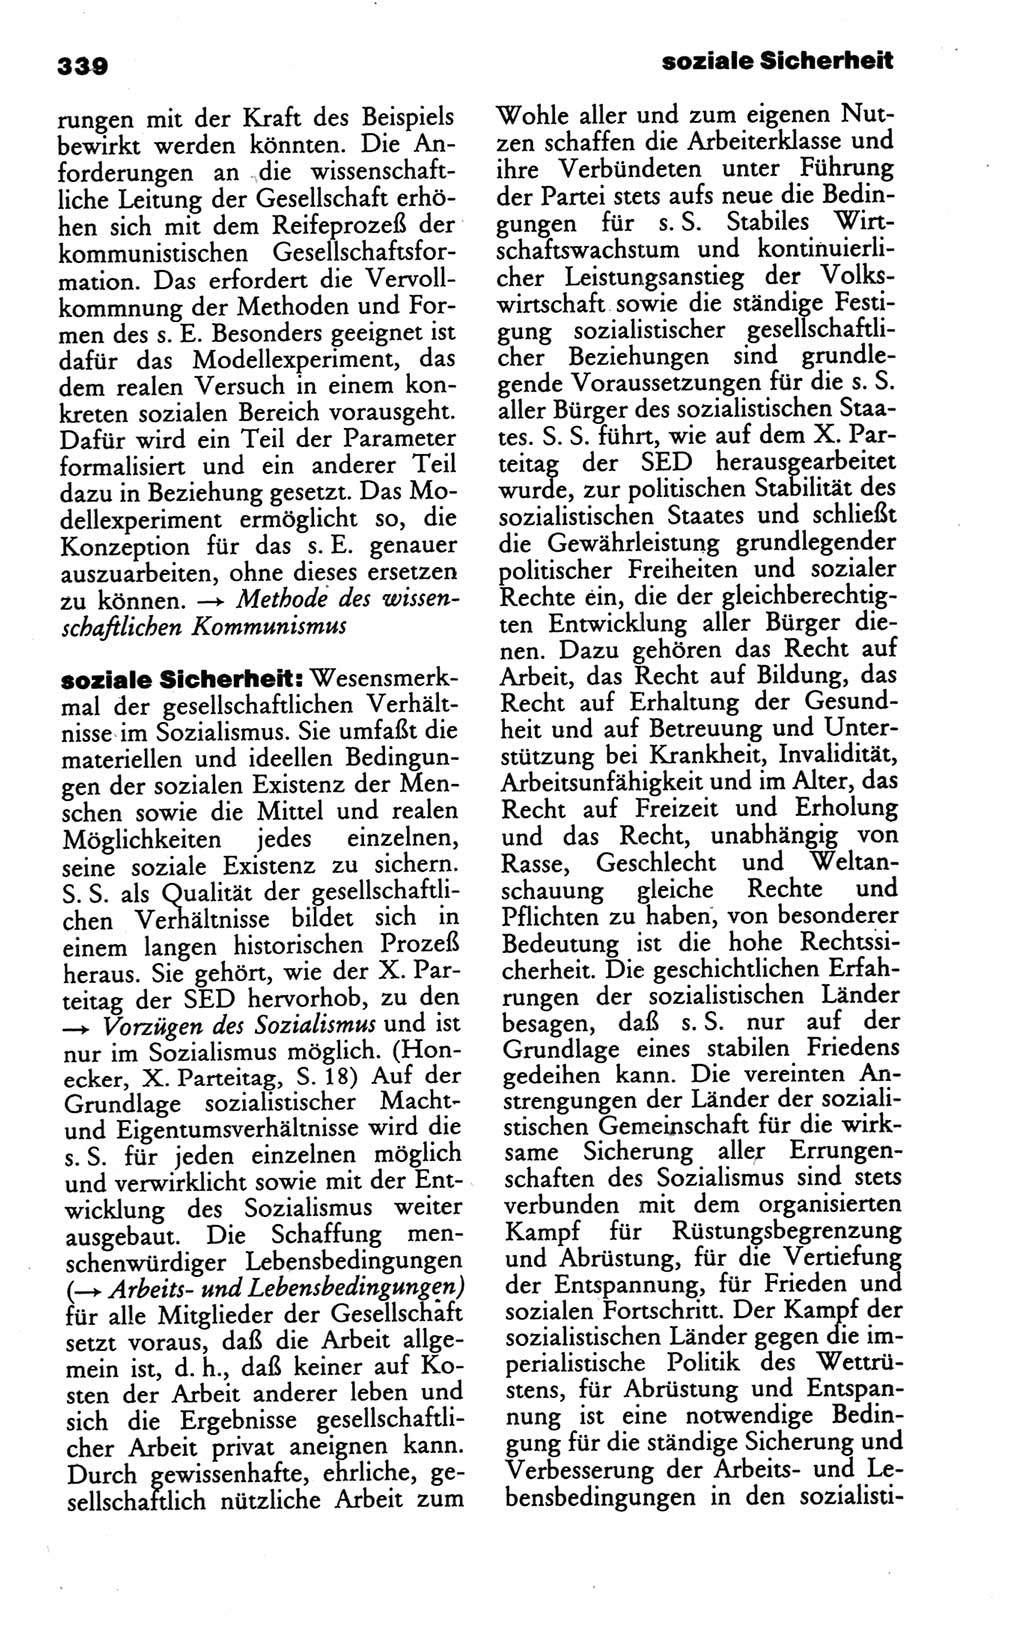 Wörterbuch des wissenschaftlichen Kommunismus [Deutsche Demokratische Republik (DDR)] 1986, Seite 339 (Wb. wiss. Komm. DDR 1986, S. 339)